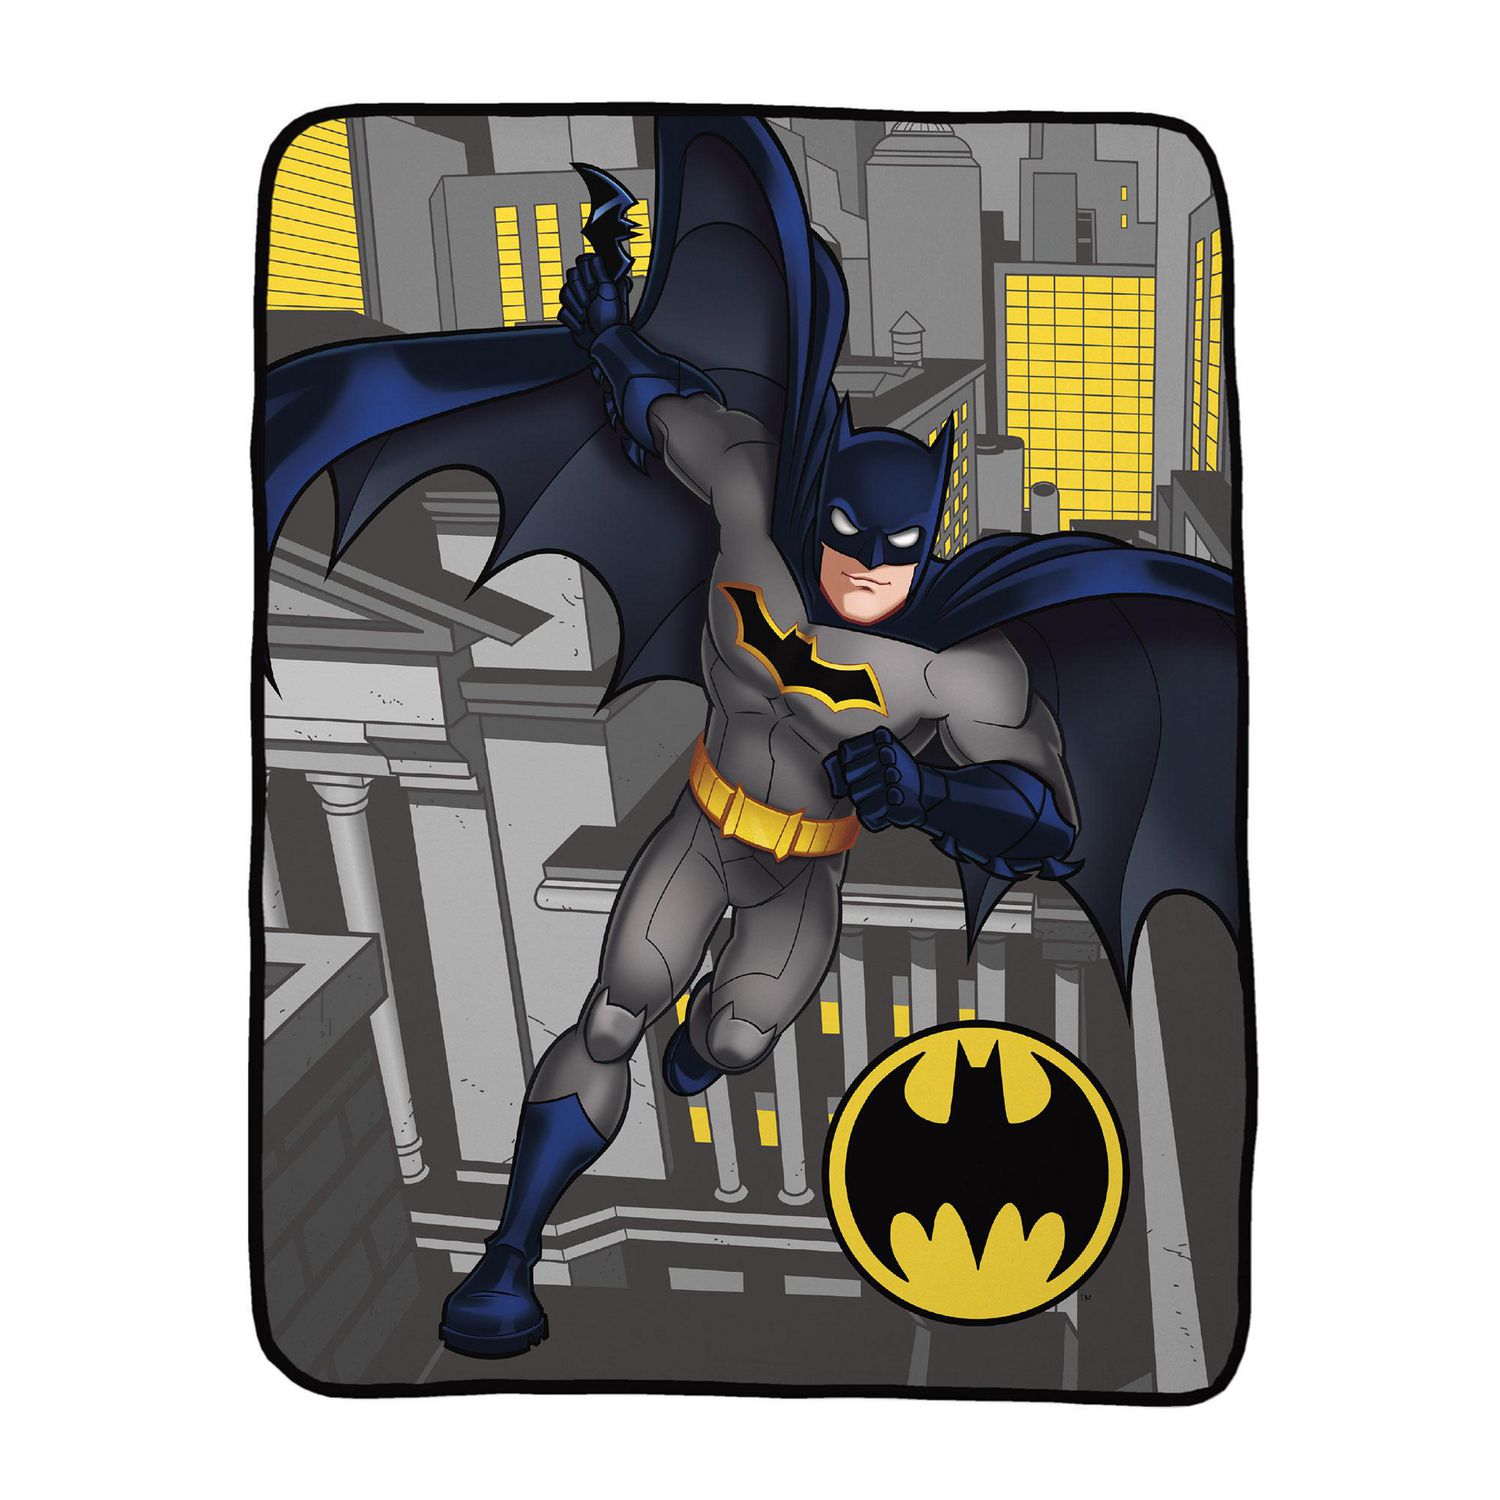 Batman Bat Man Emblem fleece blanket  throw NEW 